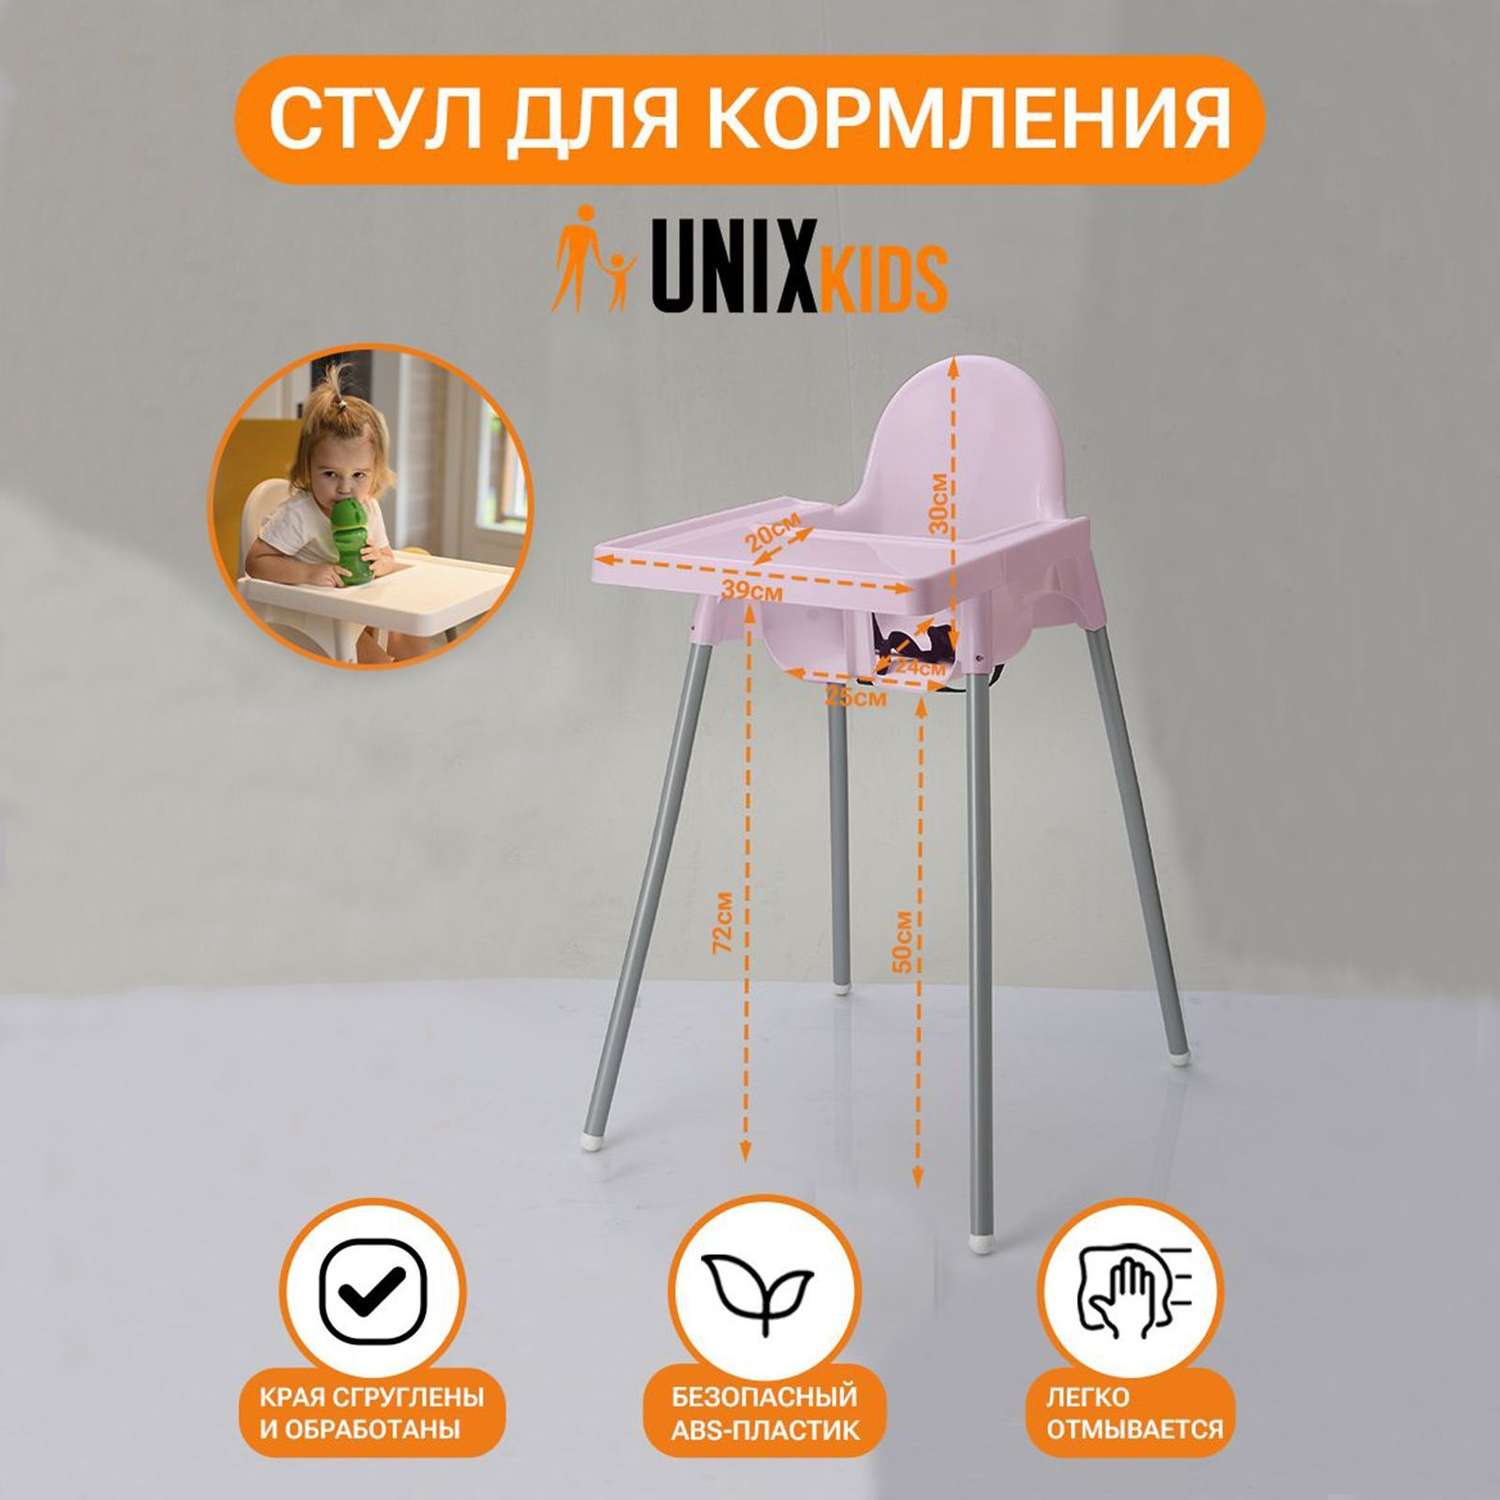 Стул для кормления UNIX Kids Fixed Rose аналог ИКЕА для кормления ребенка съемный столик ремень безопасности - фото 2